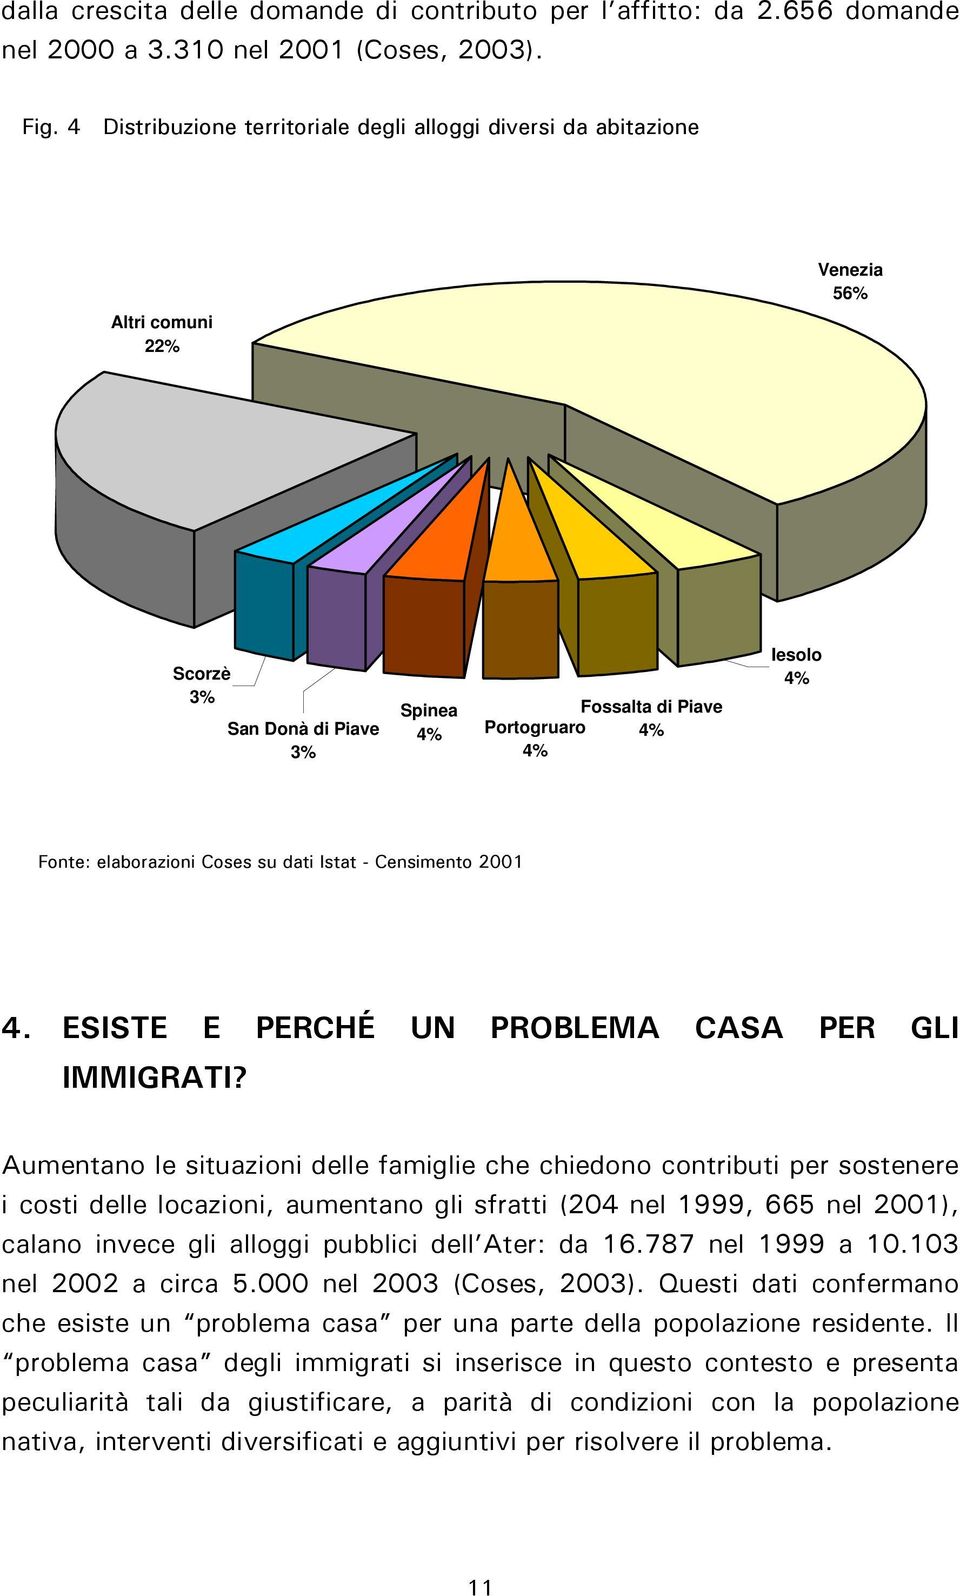 elaborazioni Coses su dati Istat - Censimento 2001 4. ESISTE E PERCHÉ UN PROBLEMA CASA PER GLI IMMIGRATI?